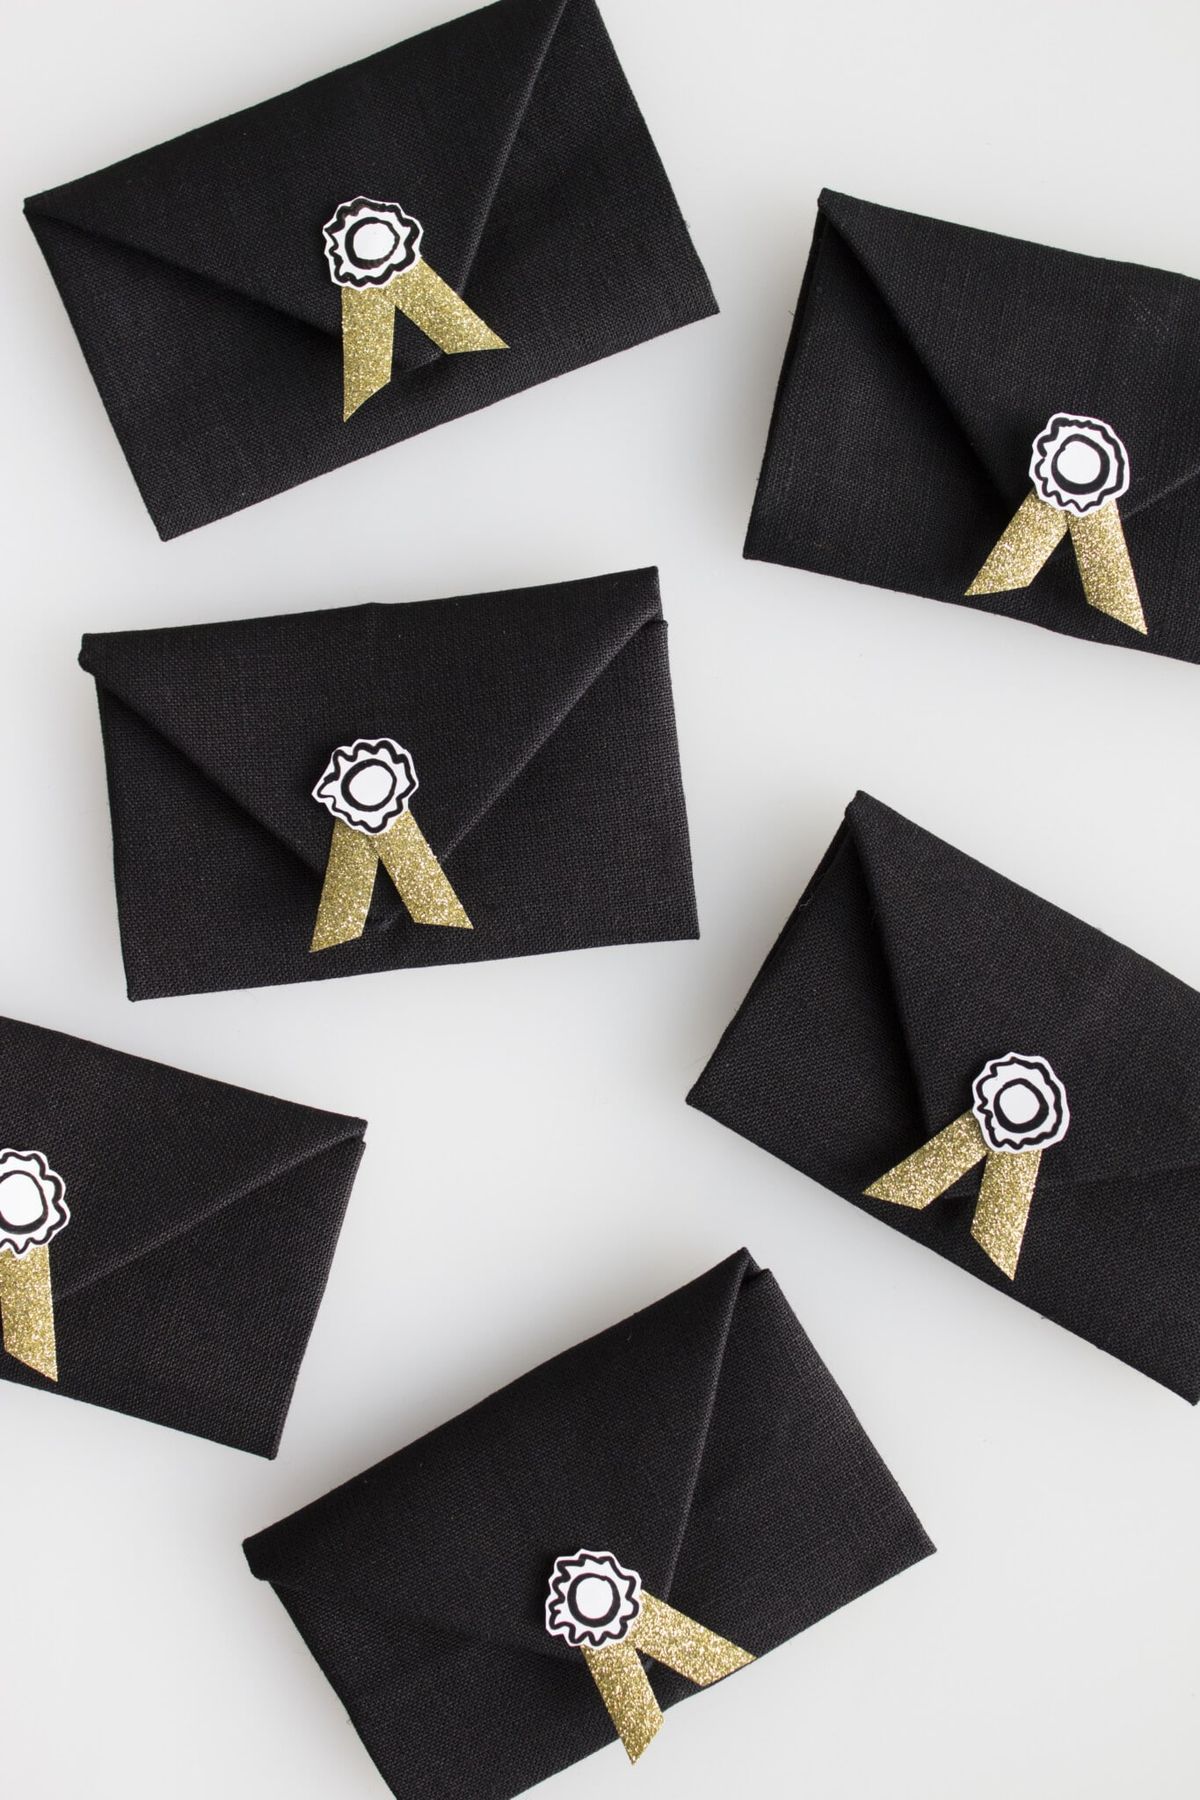 Guardanapos de envelope são ótimas ideias para a festa do Oscar